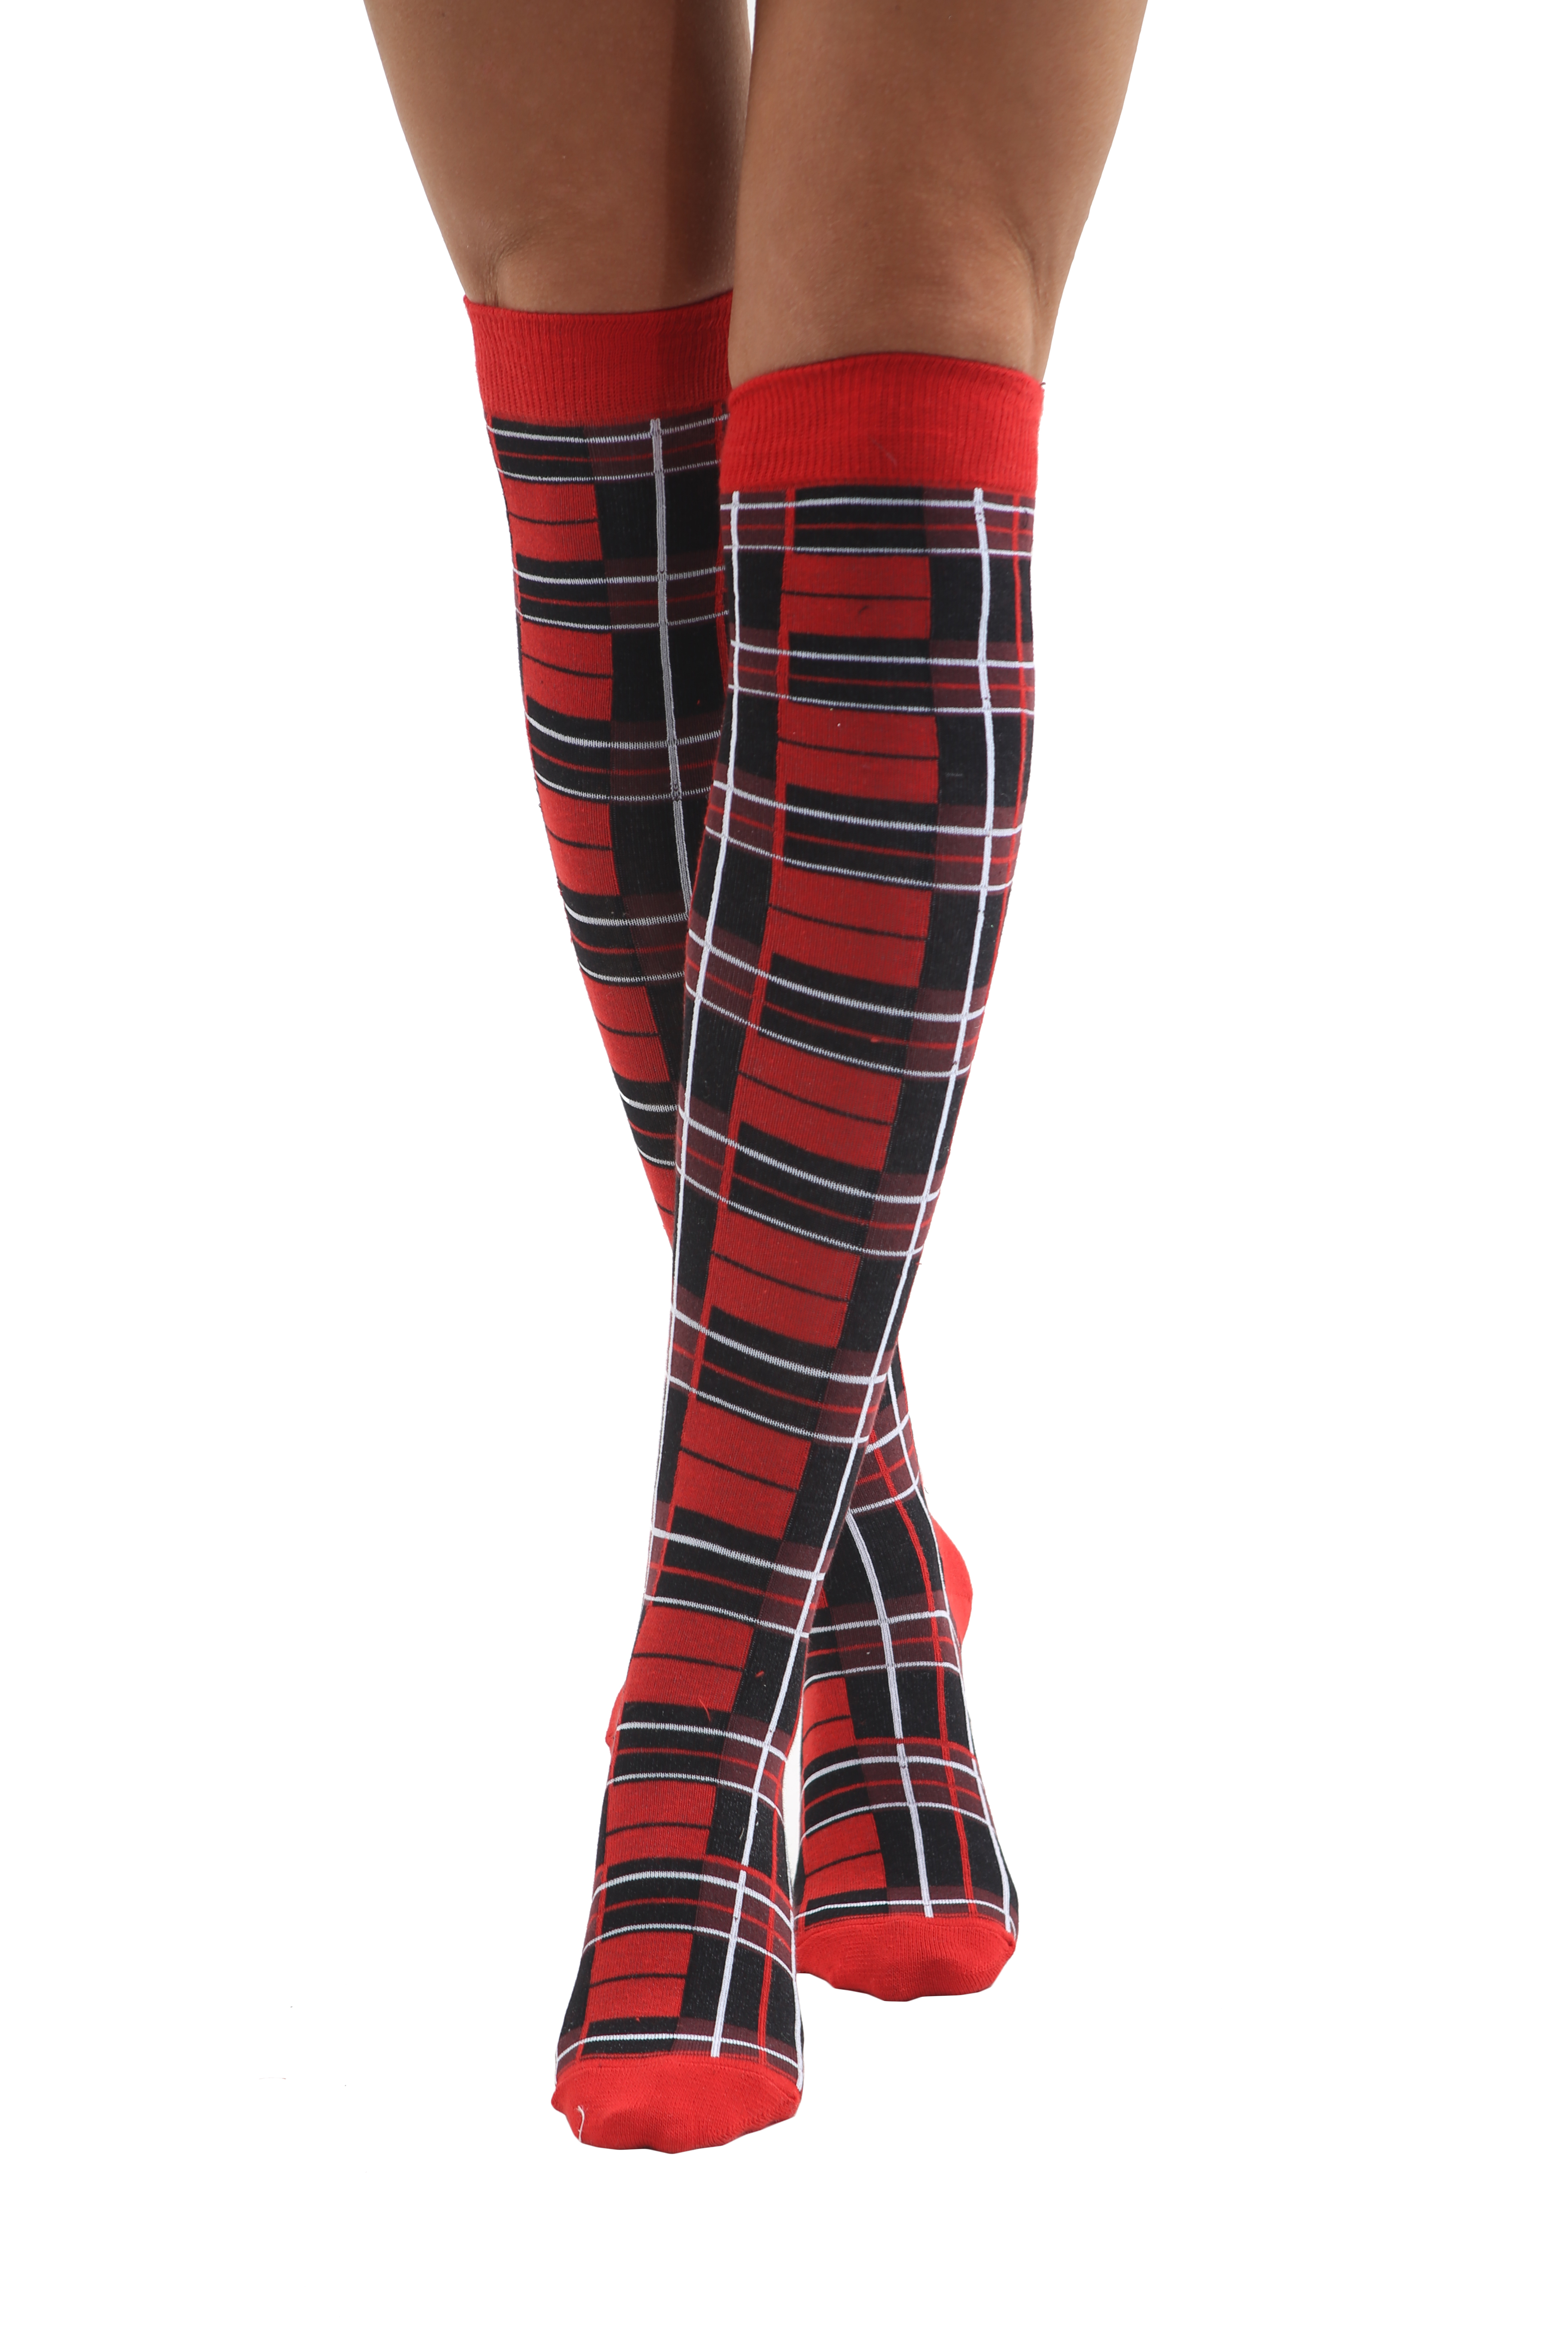 Crazy Chick Tartan Red Checkered OTK Socks (12 Pairs)